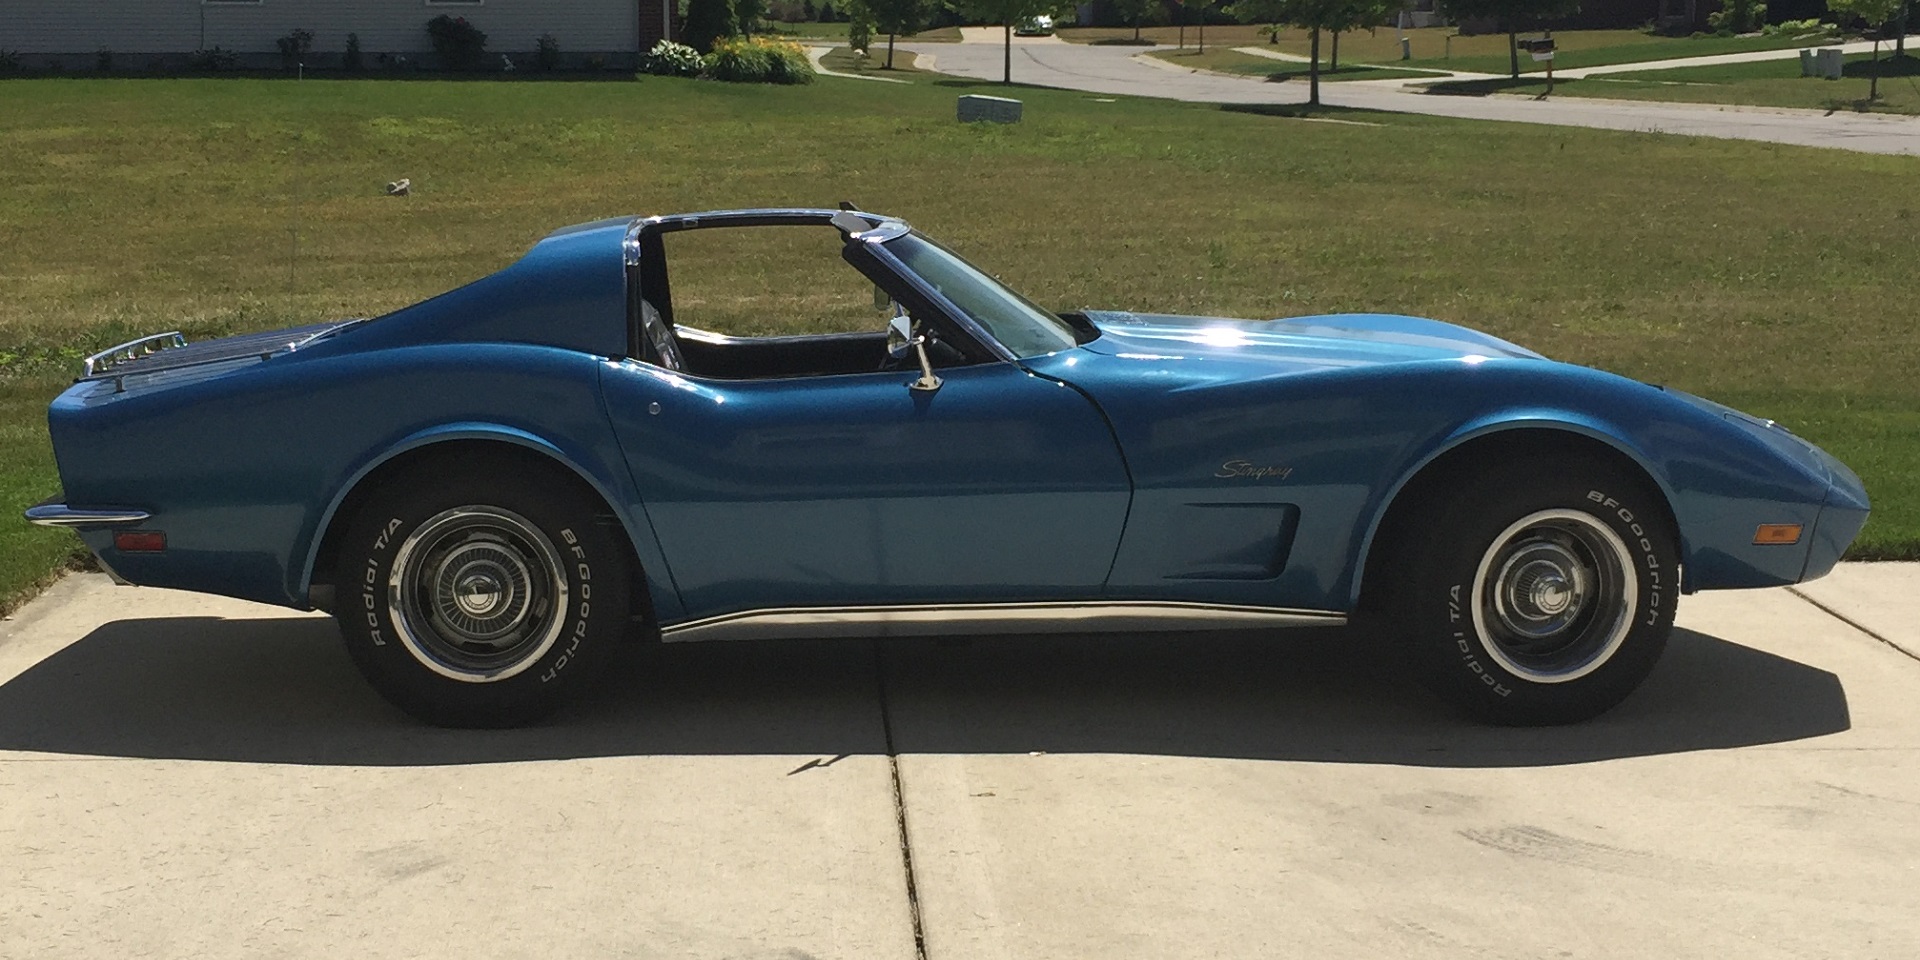 Blue 1973 Corvette - side view